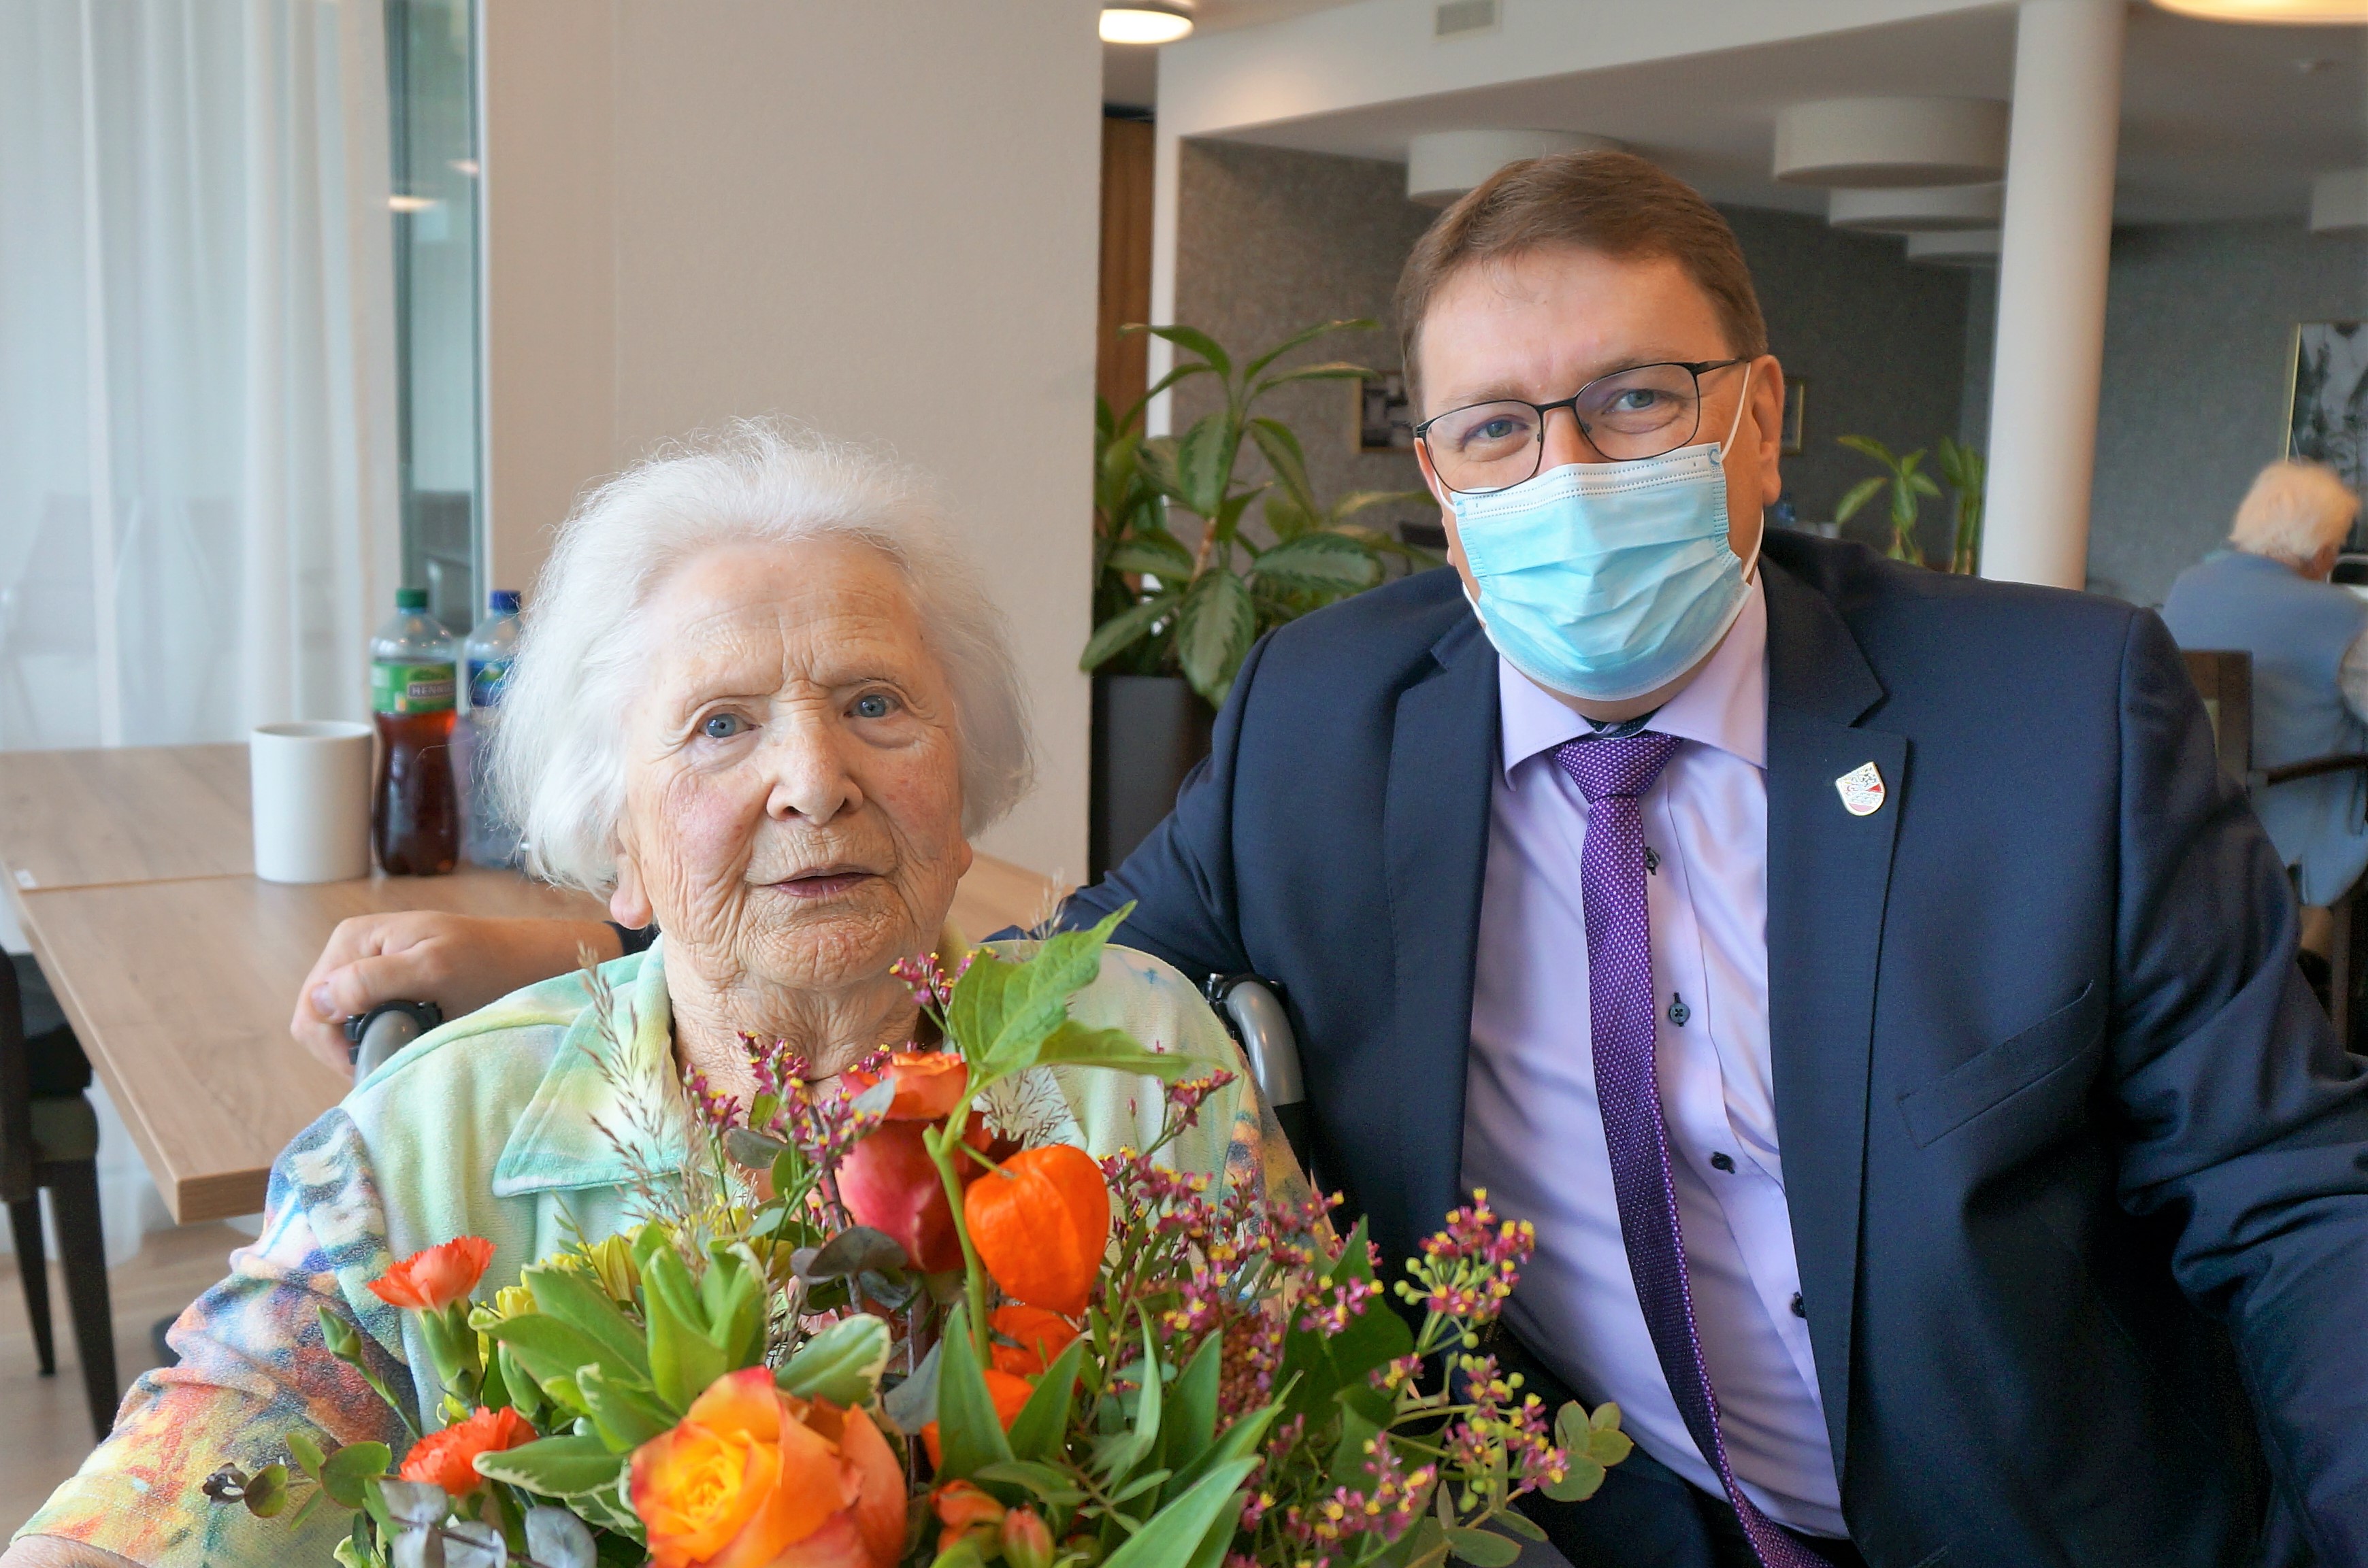 Am 1. Oktober 2022 durfte Frau Hanneli Pulver ihre 90. Geburtstag feiern.
Die Gemeindebehörden gratulieren ganz herzlich dazu!